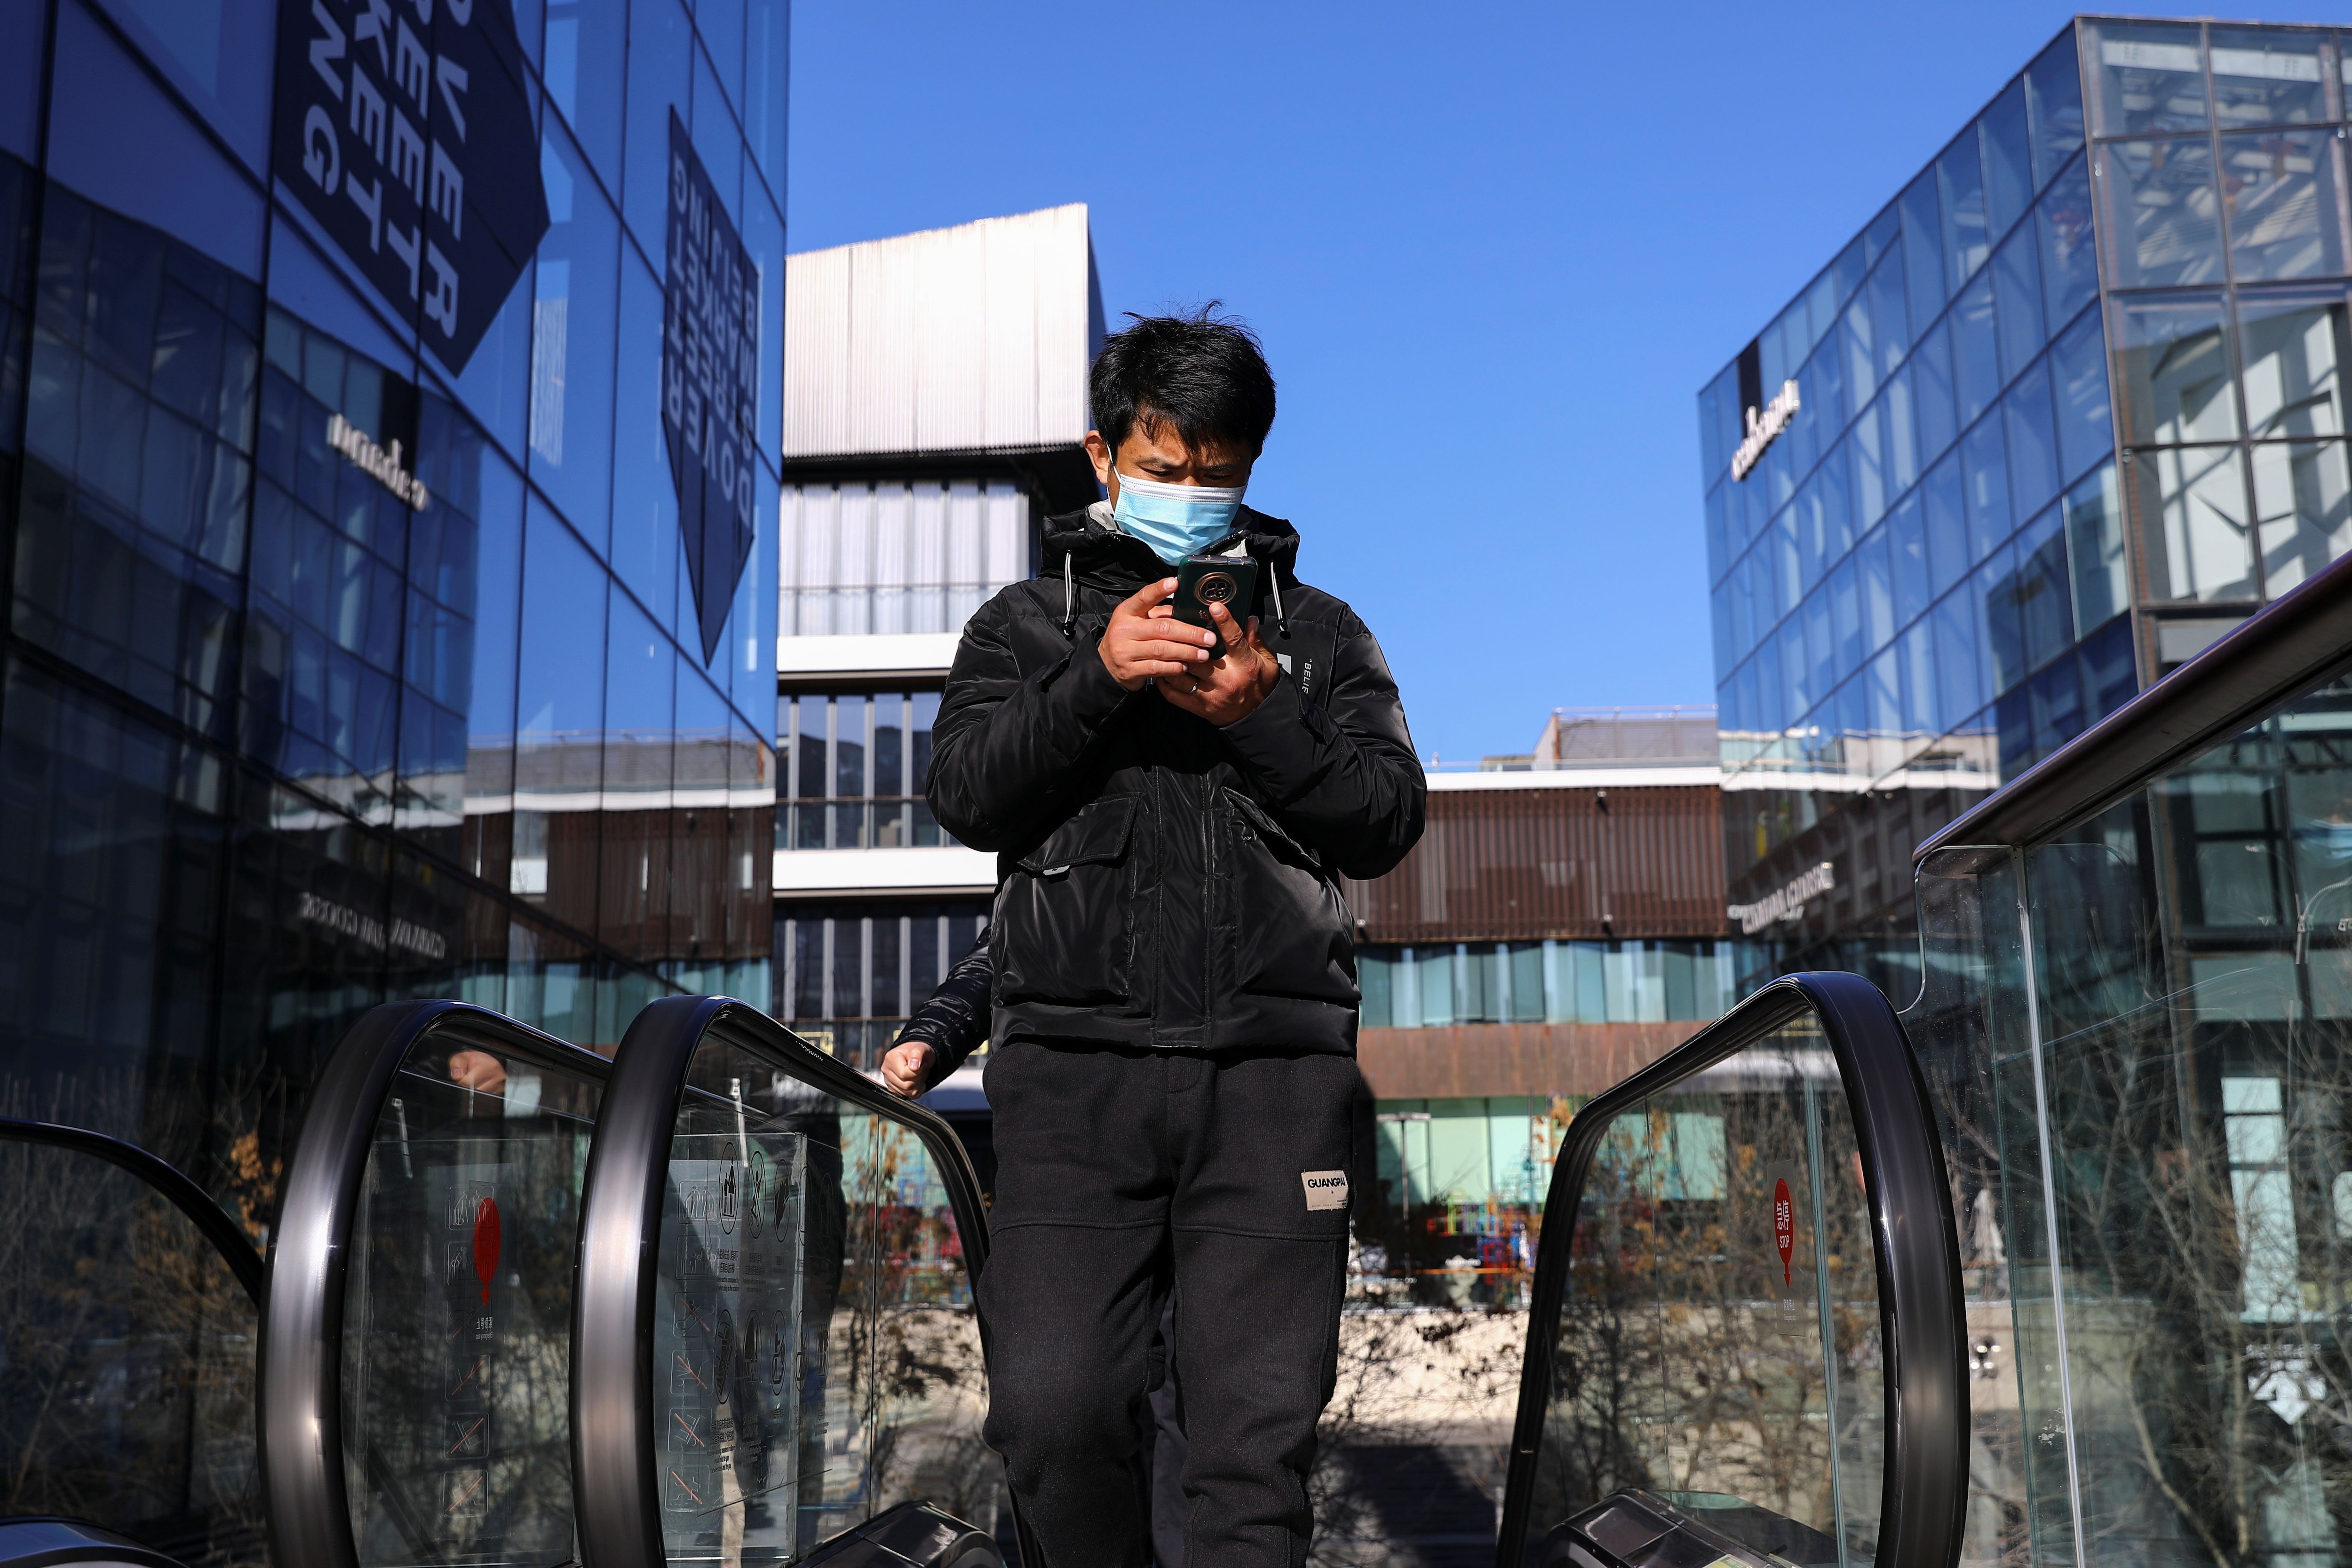 Un hombre con mascarilla para evitar la propagación de la enfermedad del coronavirus (COVID-19) revisa su teléfono mientras viaja en una escalera mecánica en un complejo comercial en Beijing, China 1 de diciembre de 2021. REUTERS/Tingshu Wang